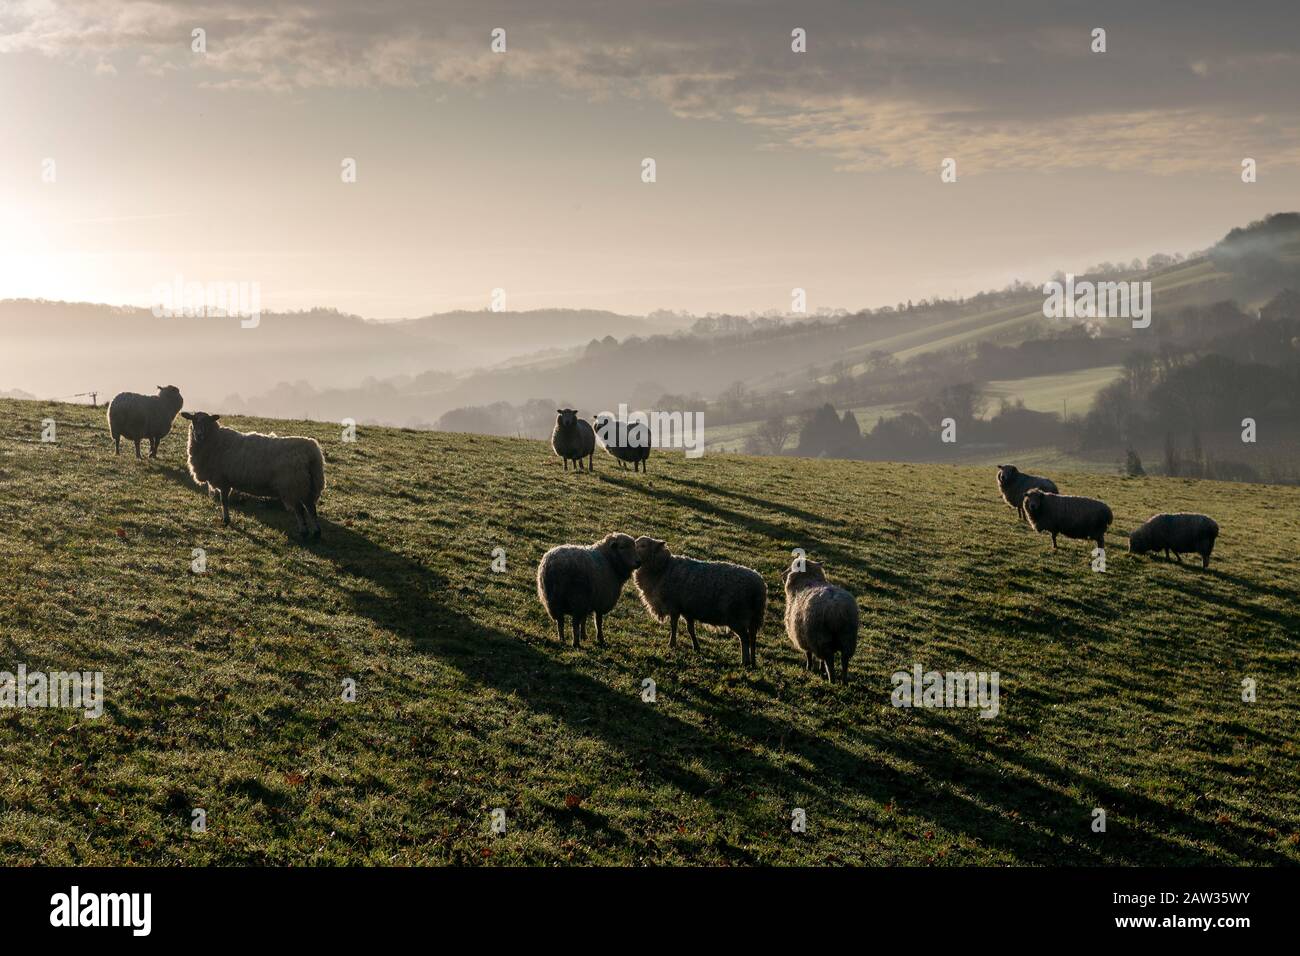 TMisty Fields in der Nähe von Dunsford, einem Dorf in Devon, Dreschen der Bodenbearbeitung agronomics Crop-raising, Geoponics, Share-cropping, Bodenkultur, Stockfoto